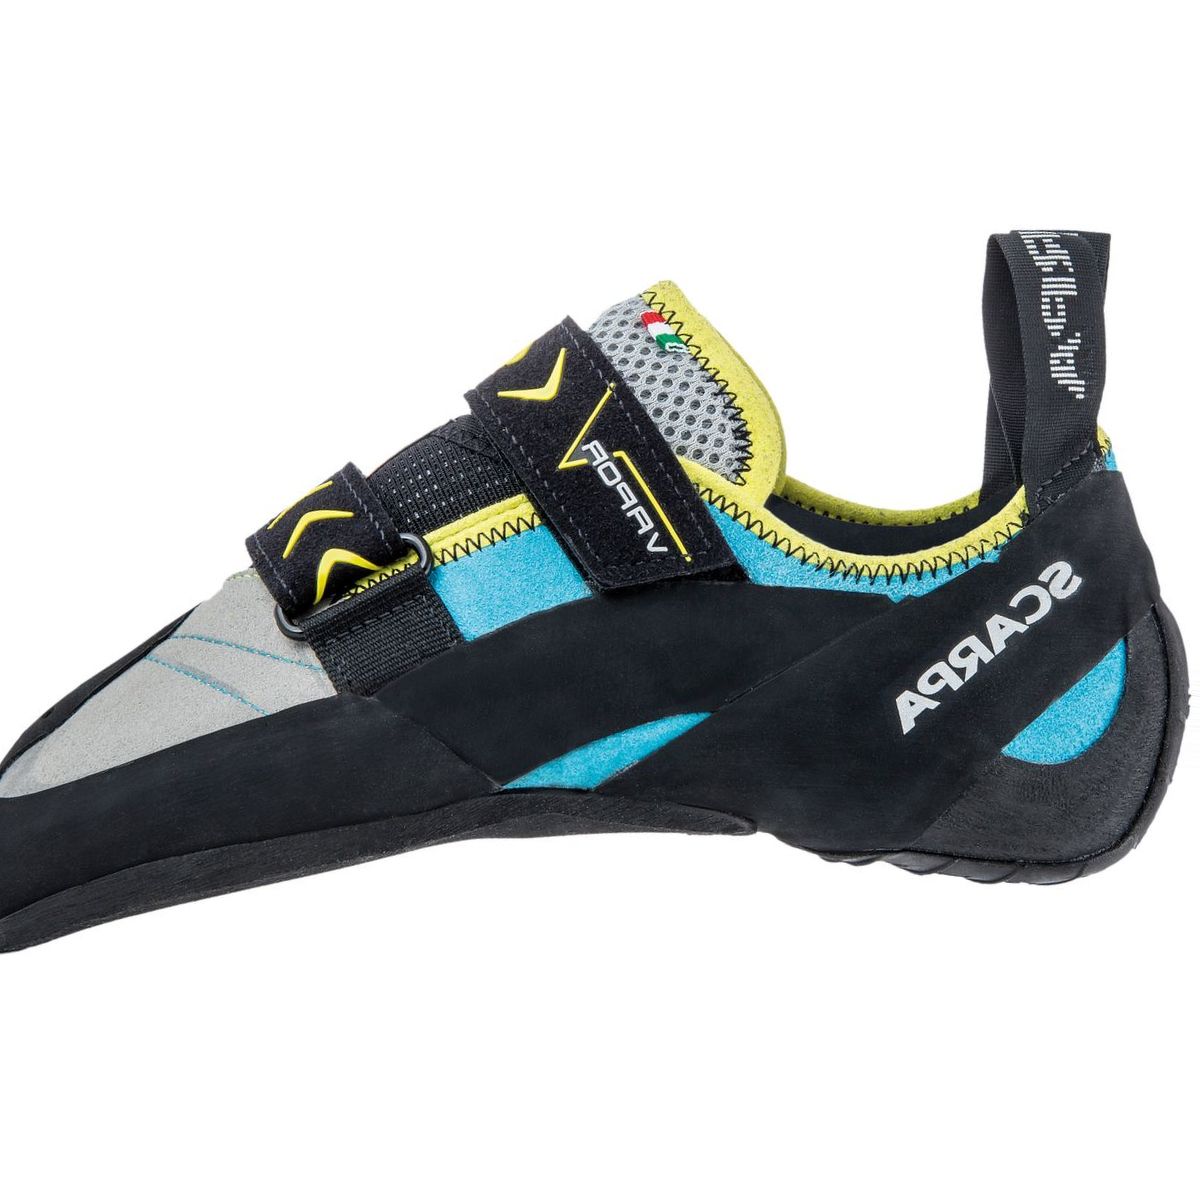 Scarpa Vapor V Climbing Shoe - XS Edge - Women's